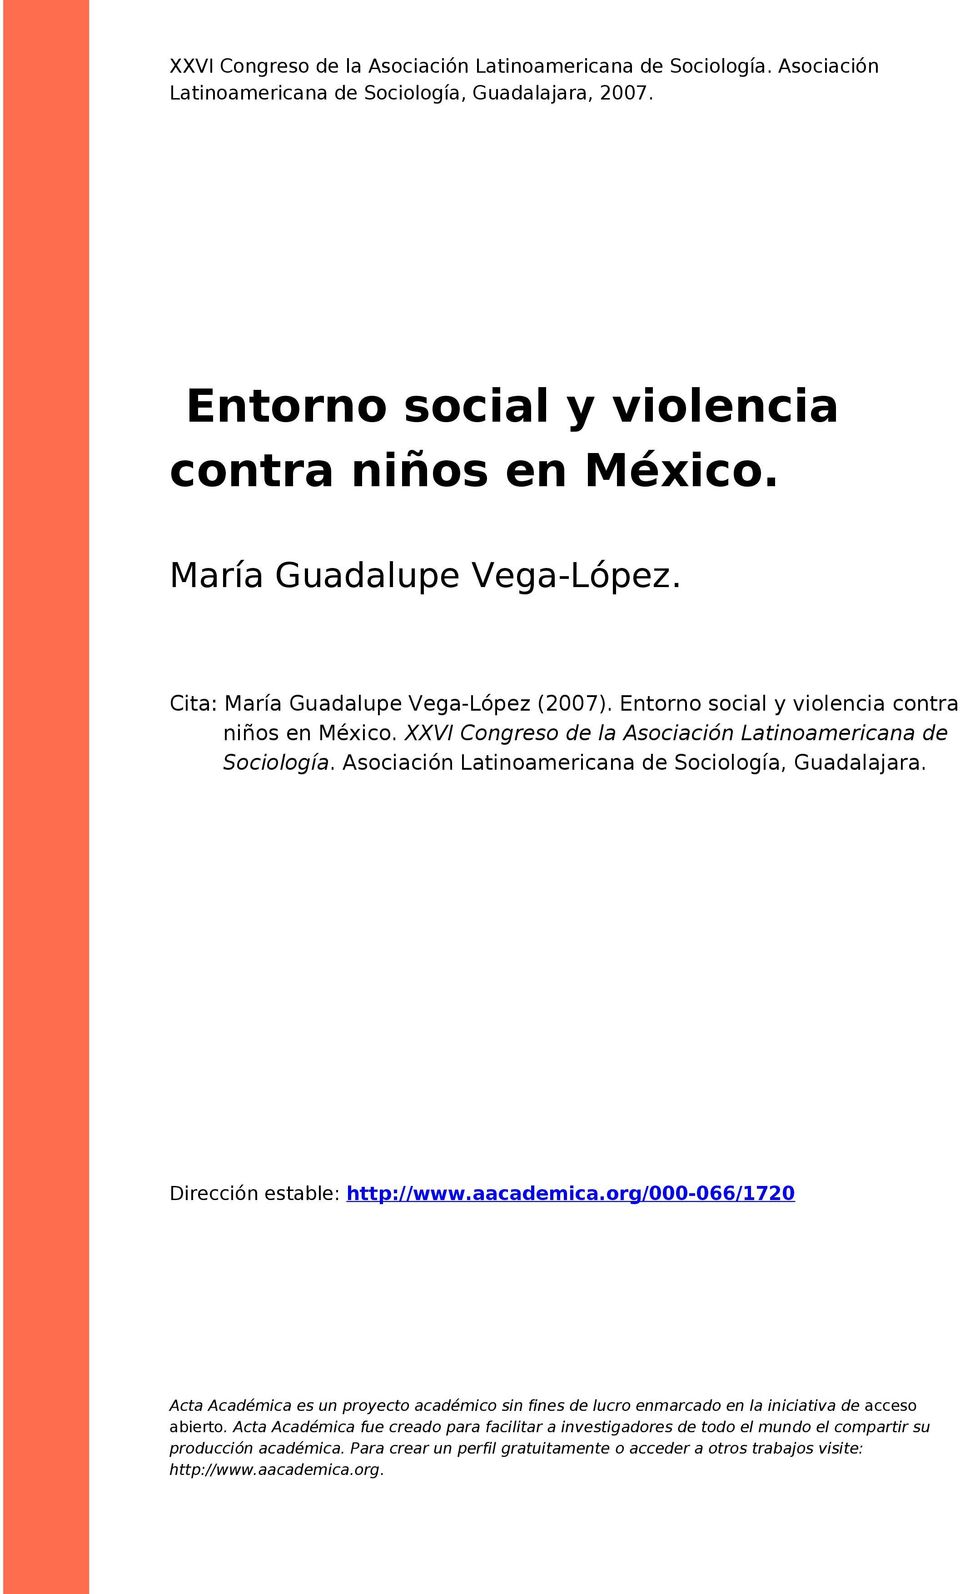 Asociación Latinoamericana de Sociología, Guadalajara. Dirección estable: http://www.aacademica.